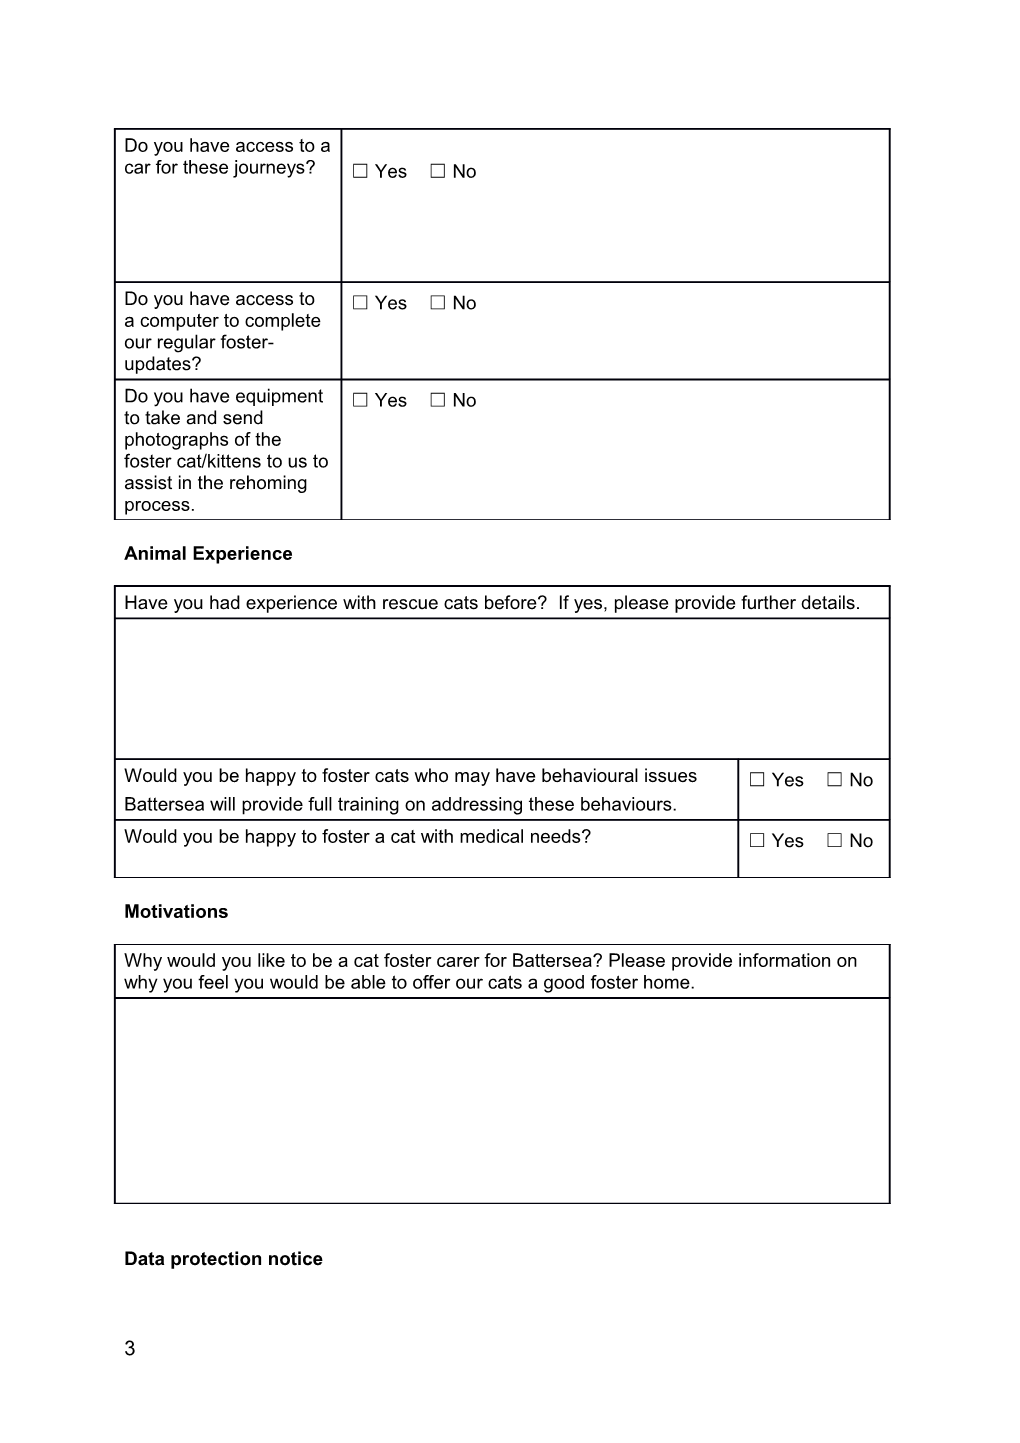 Adult Cat - Foster Carer Application Form